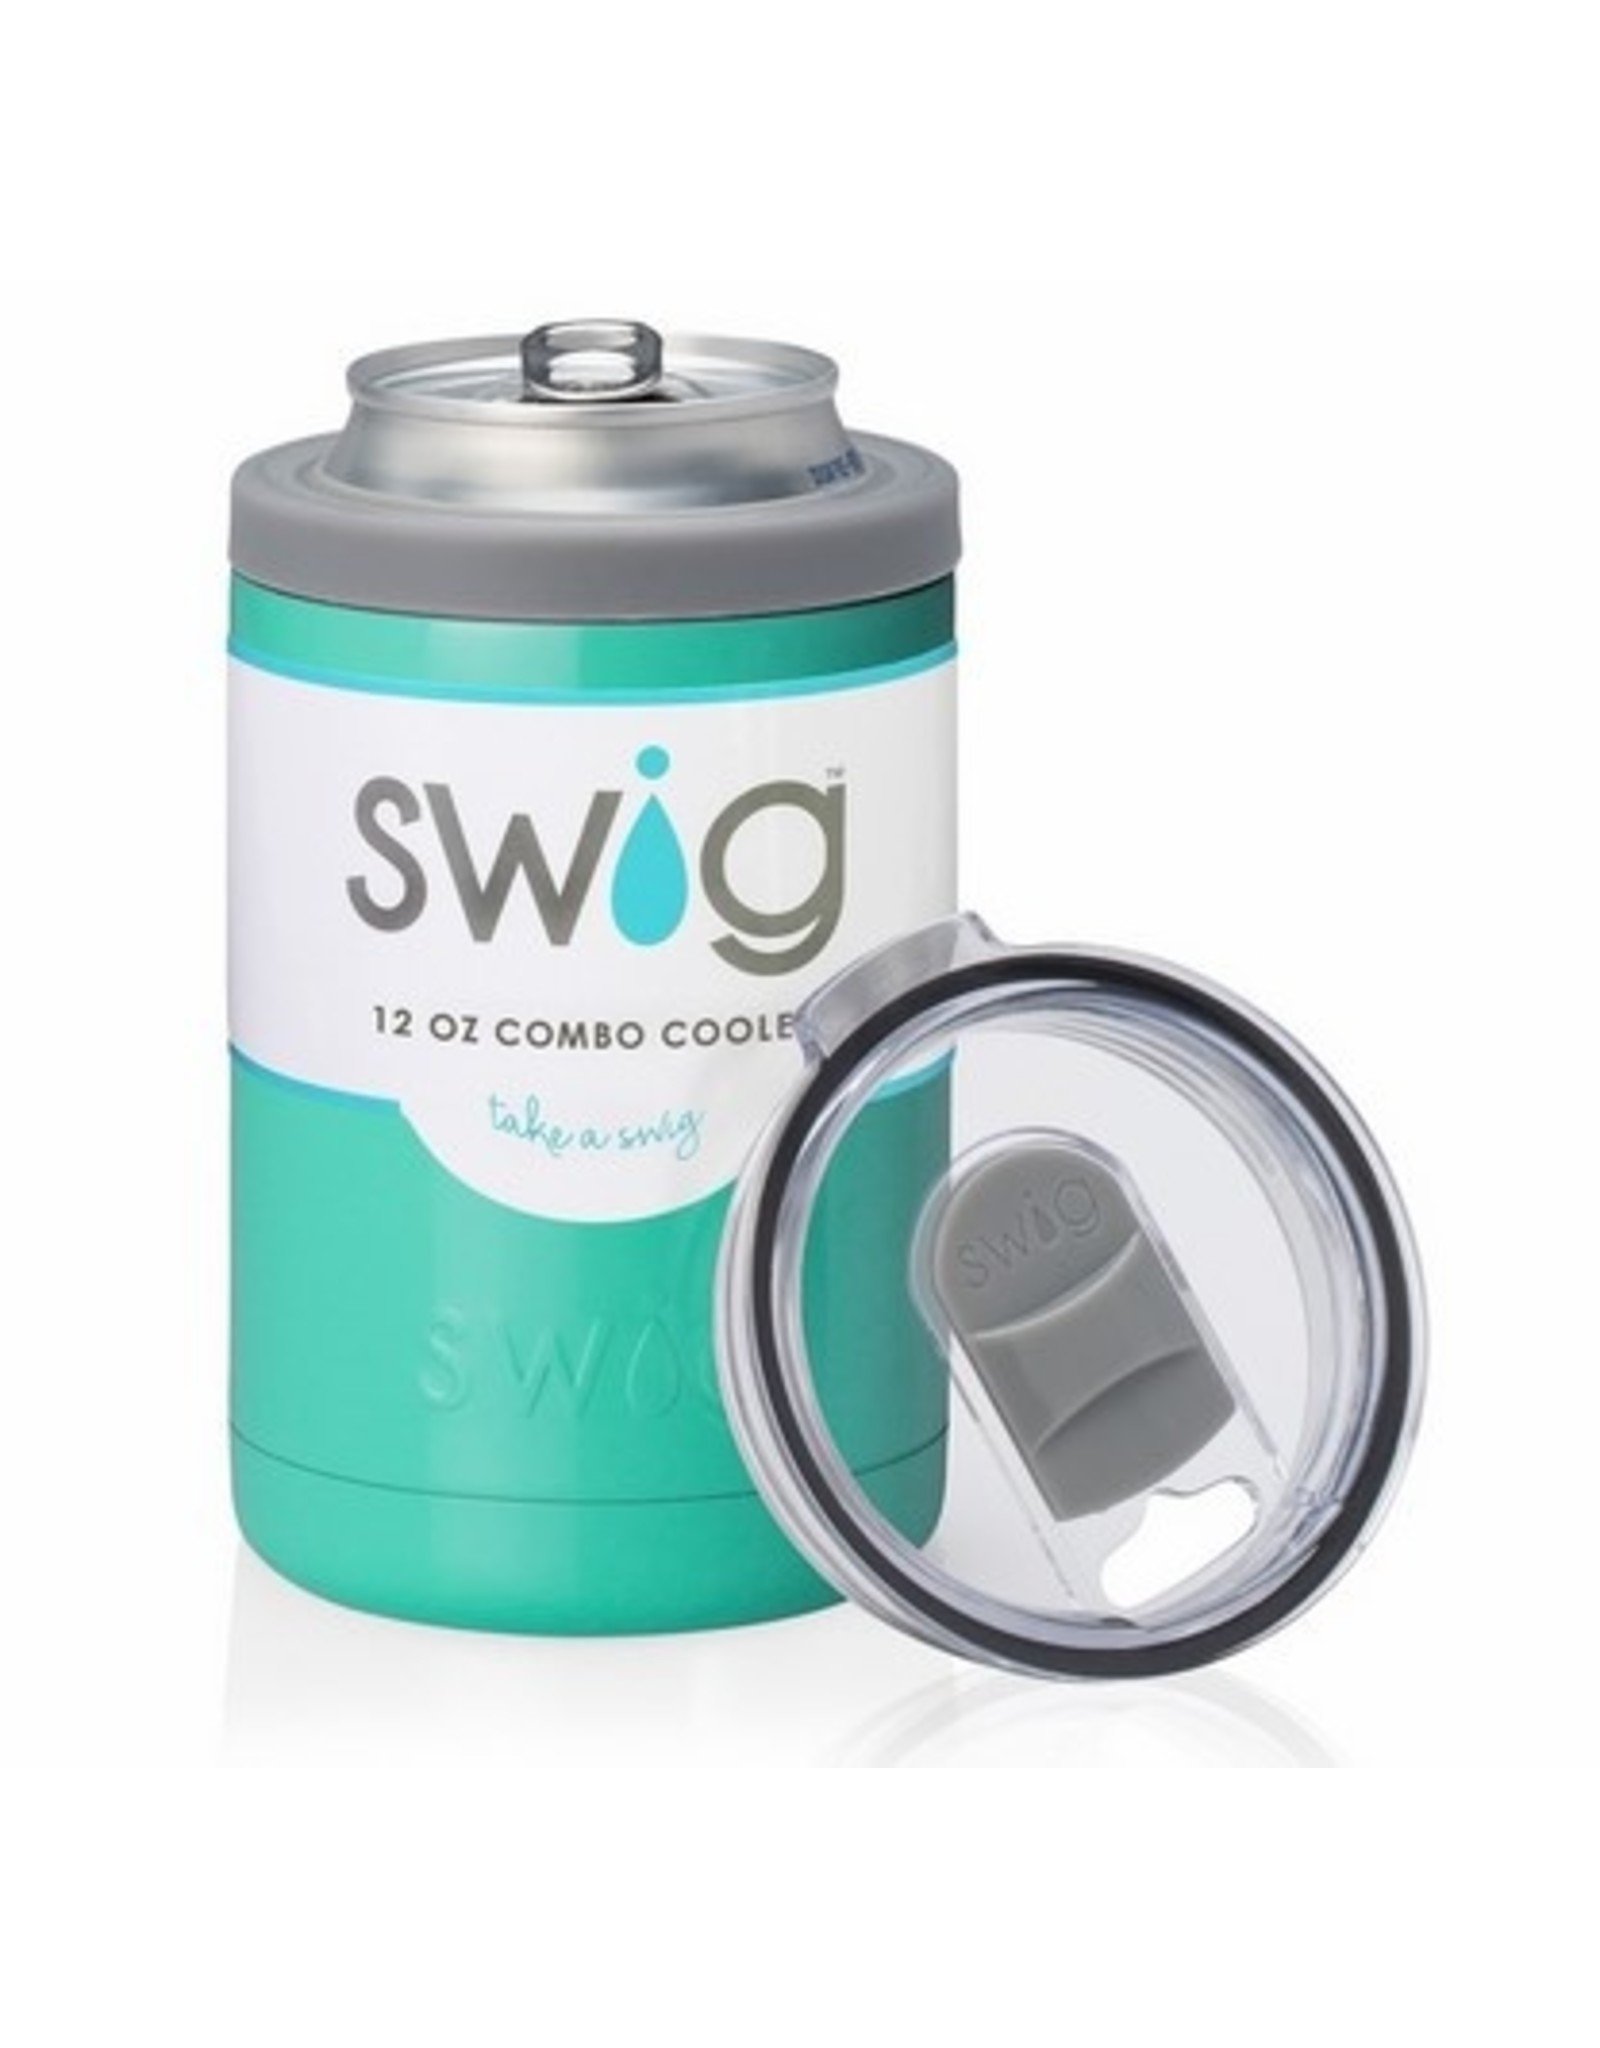 Swig Life 12 oz Combo Cooler - Turquoise